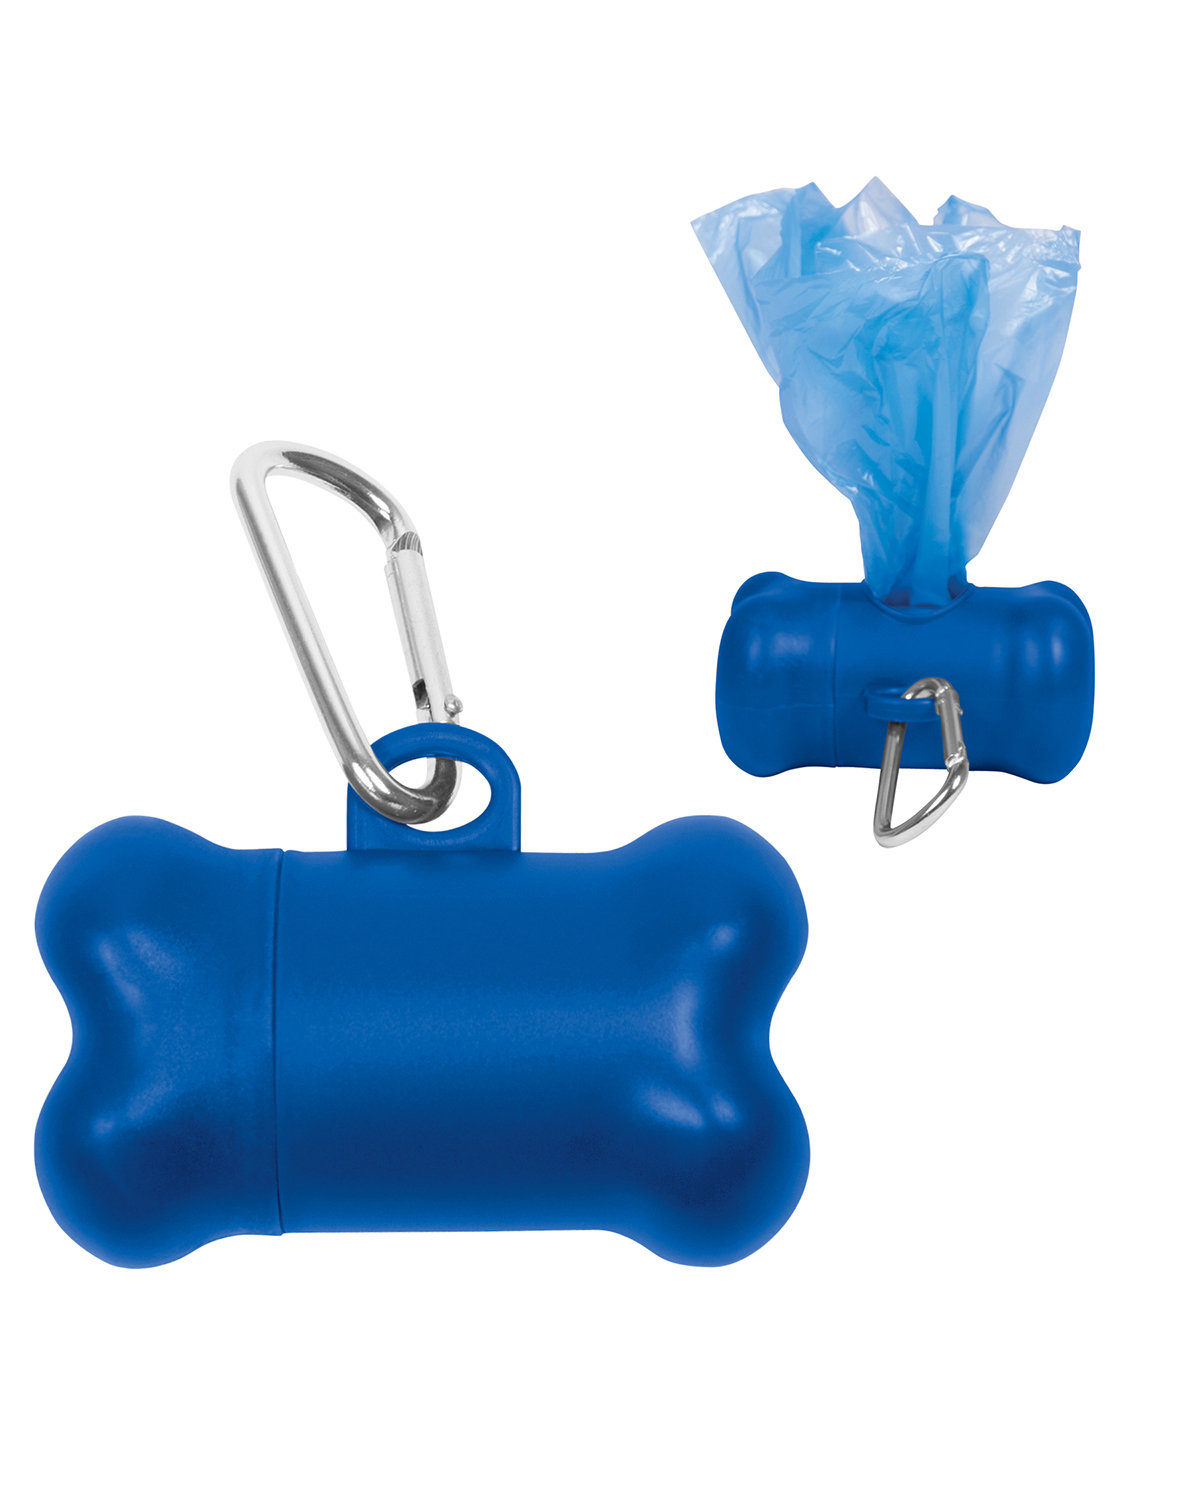 Prime Line Pet Waste Disposal Bag Dispenser blue 